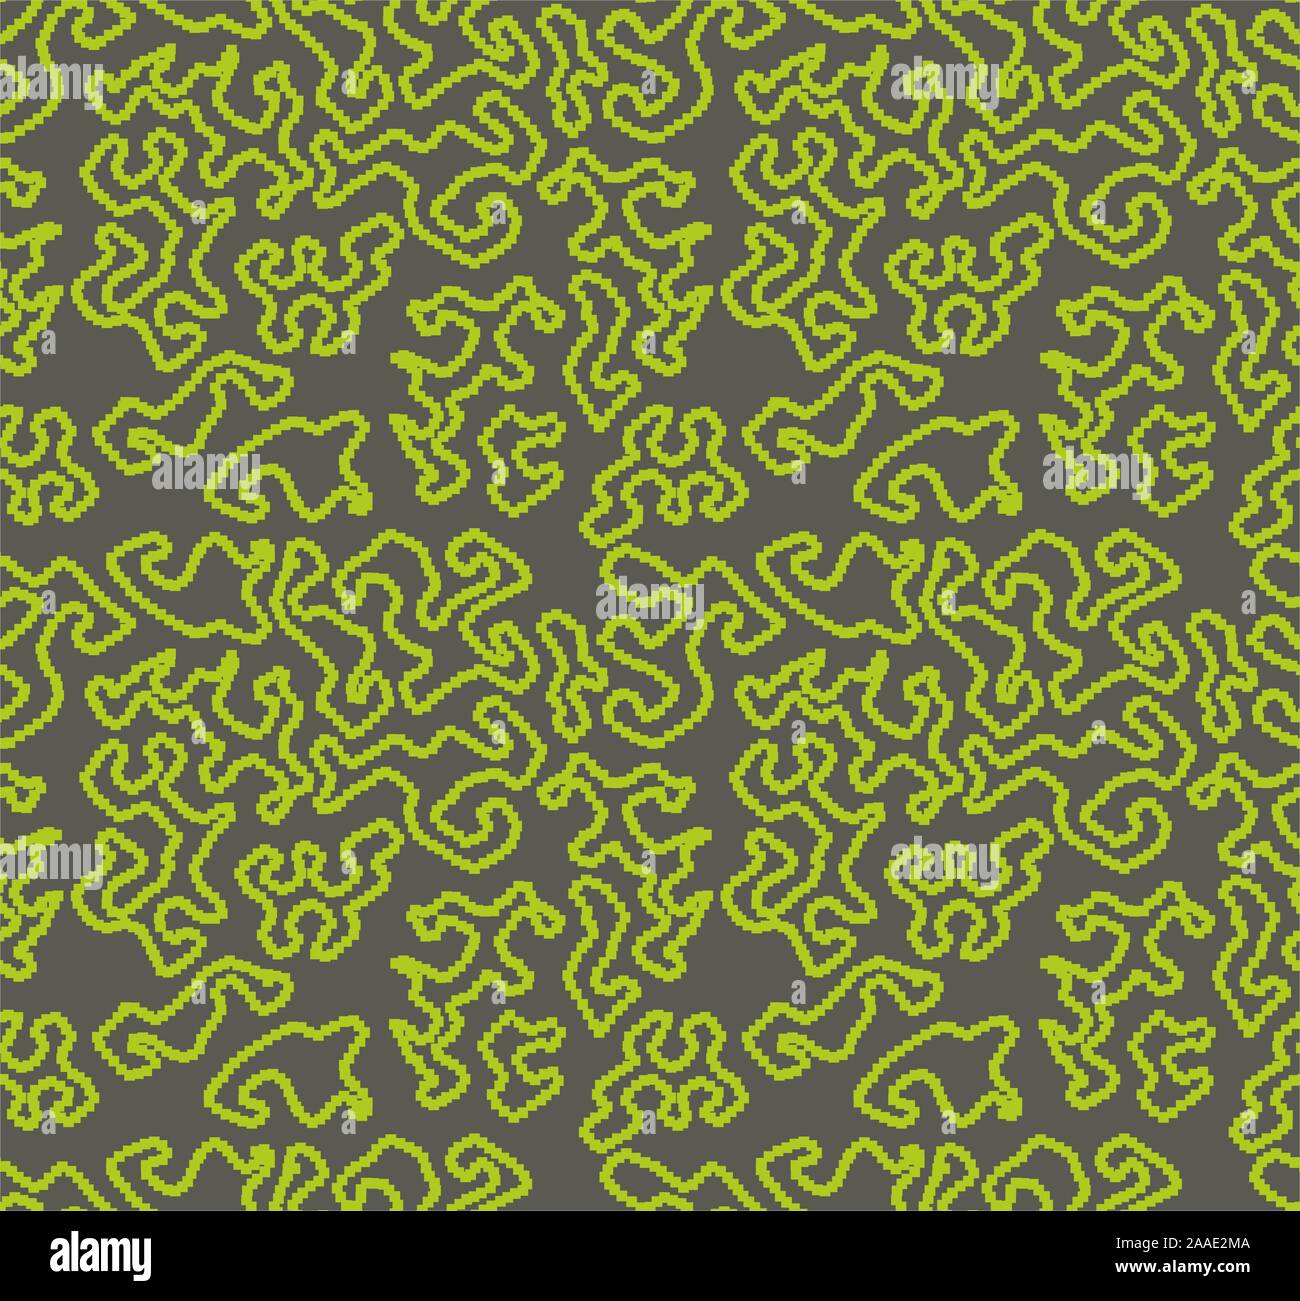 Pixel pattern camouflage, militare senza soluzione di continuità di stampa uniforme per tessuto, esercito,soldato sfondo texture. - Vettore Illustrazione Vettoriale